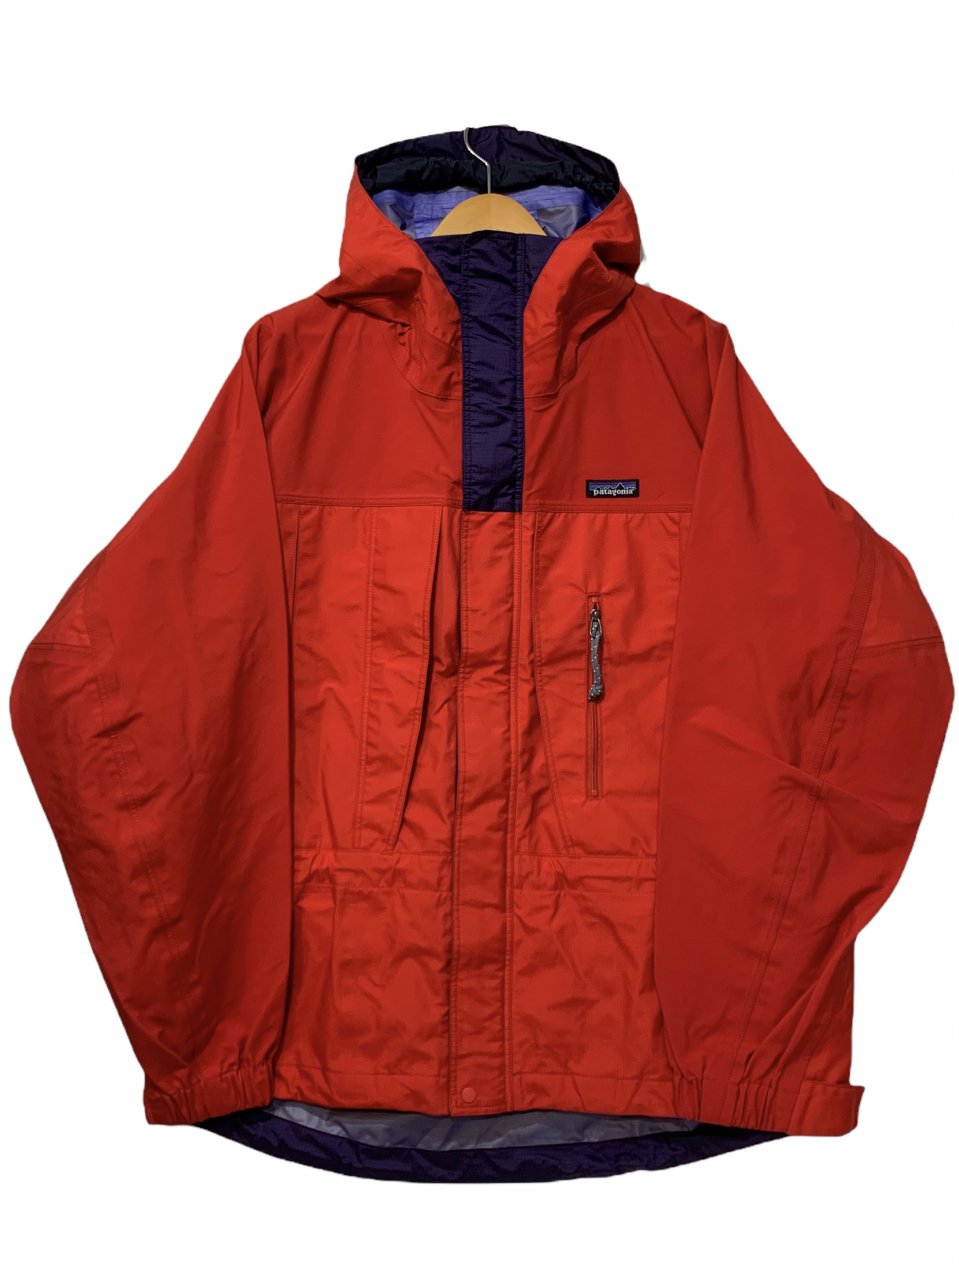 Patagonia infurno jacket '99 フェニックスレッド